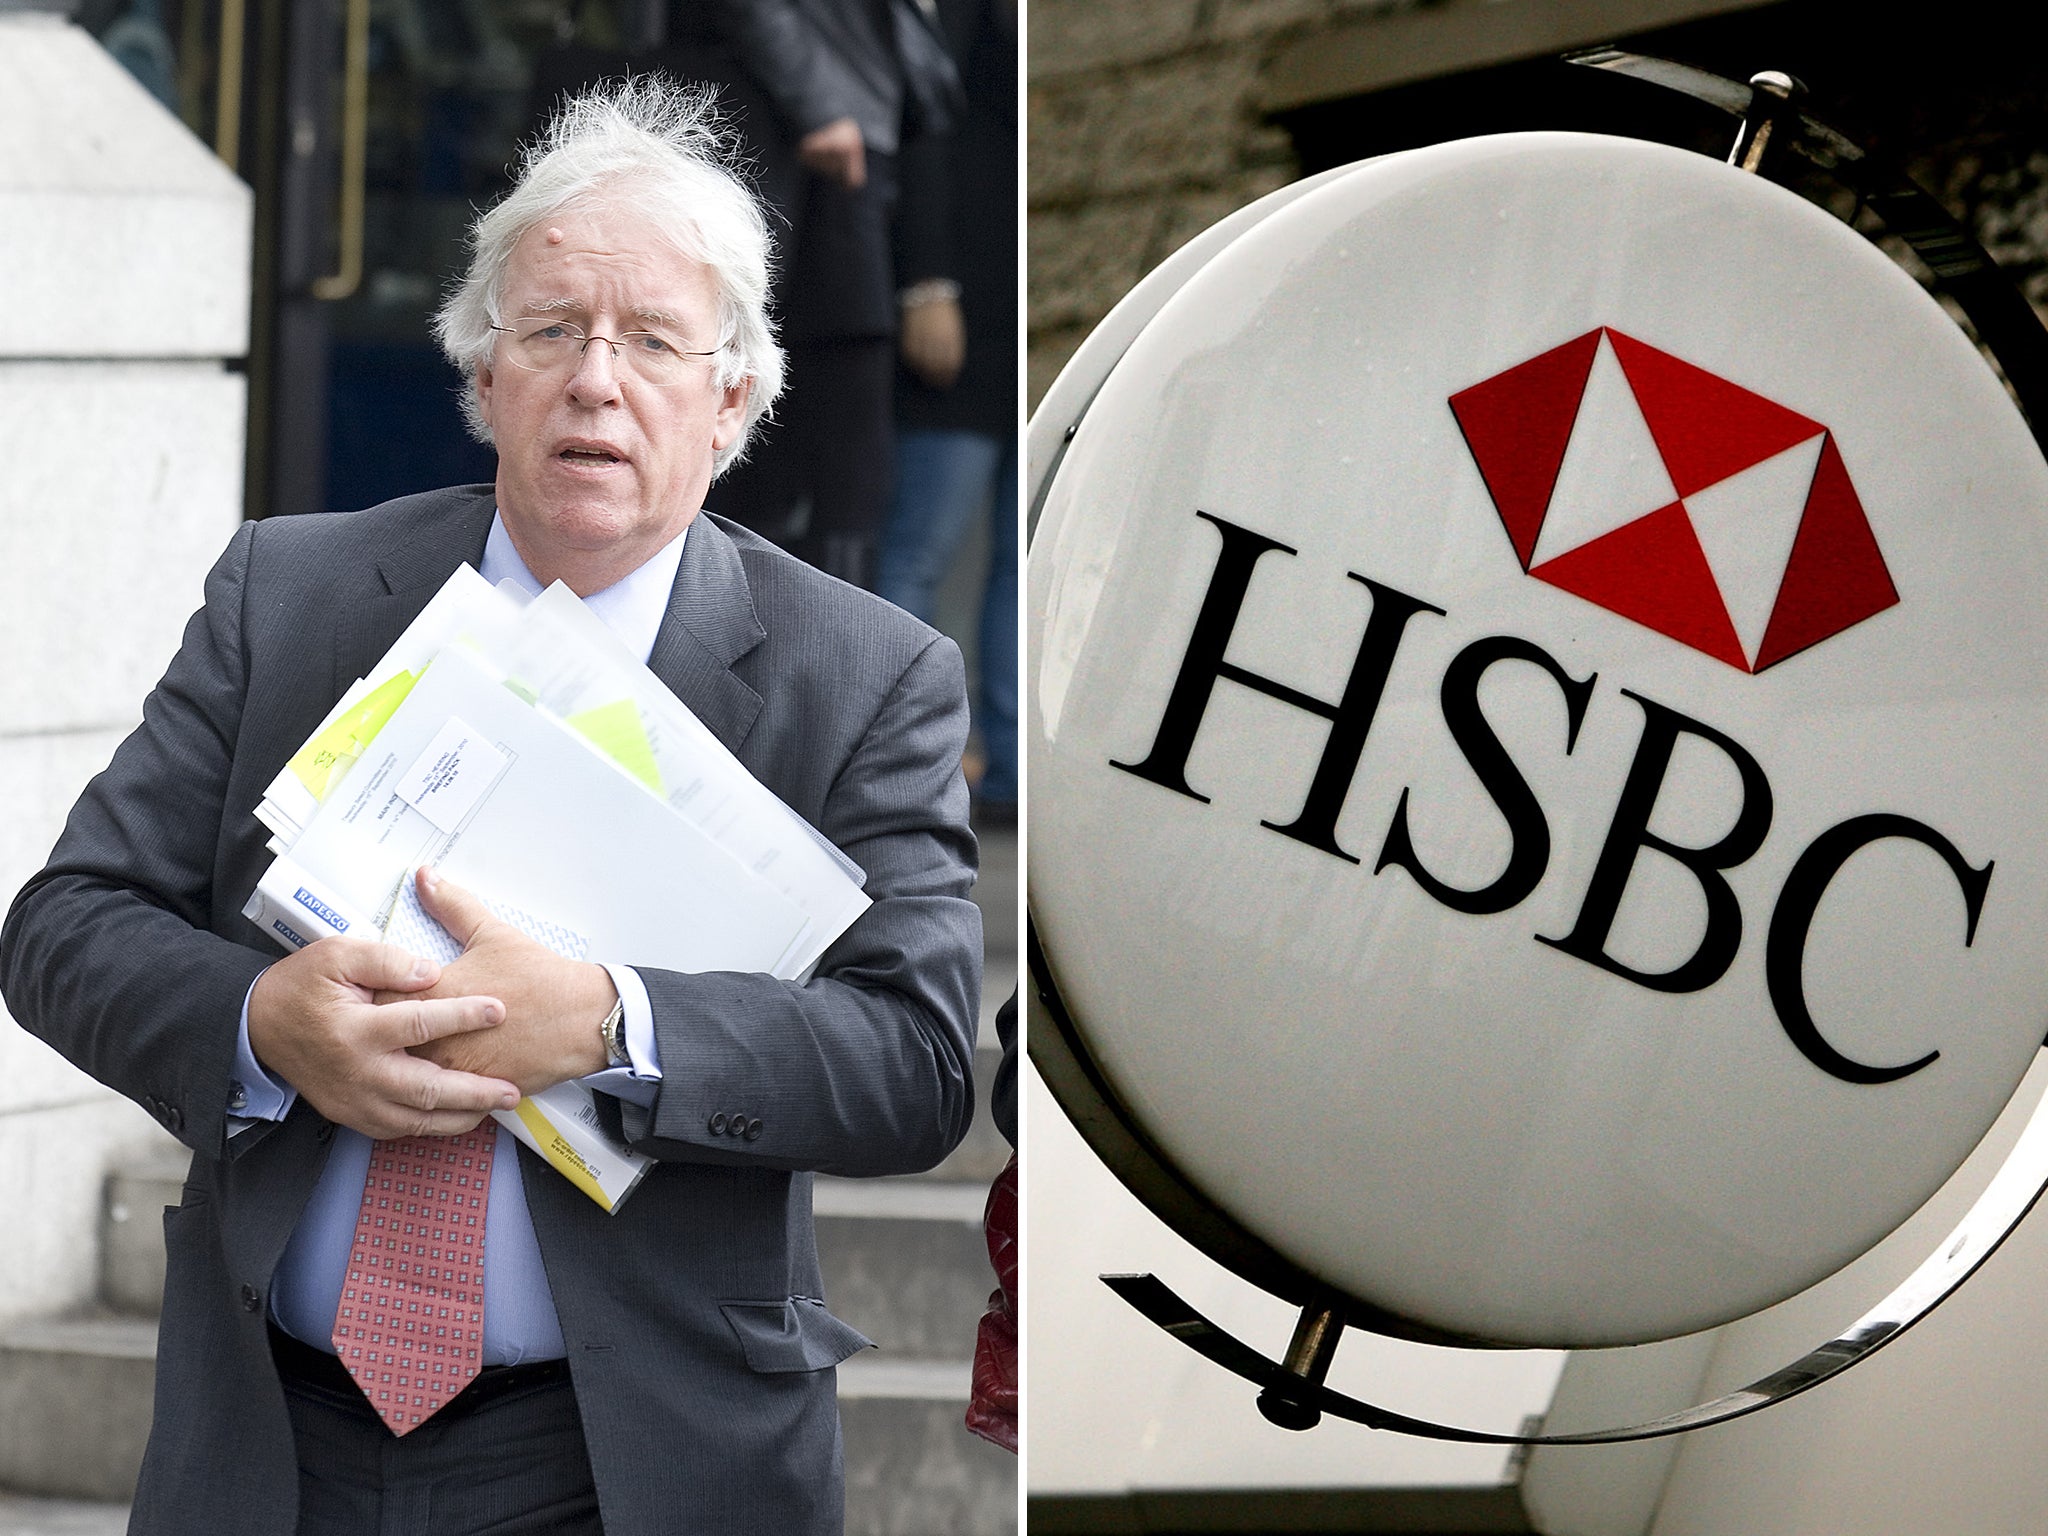 Dave Hartnett left HMRC to join HSBC